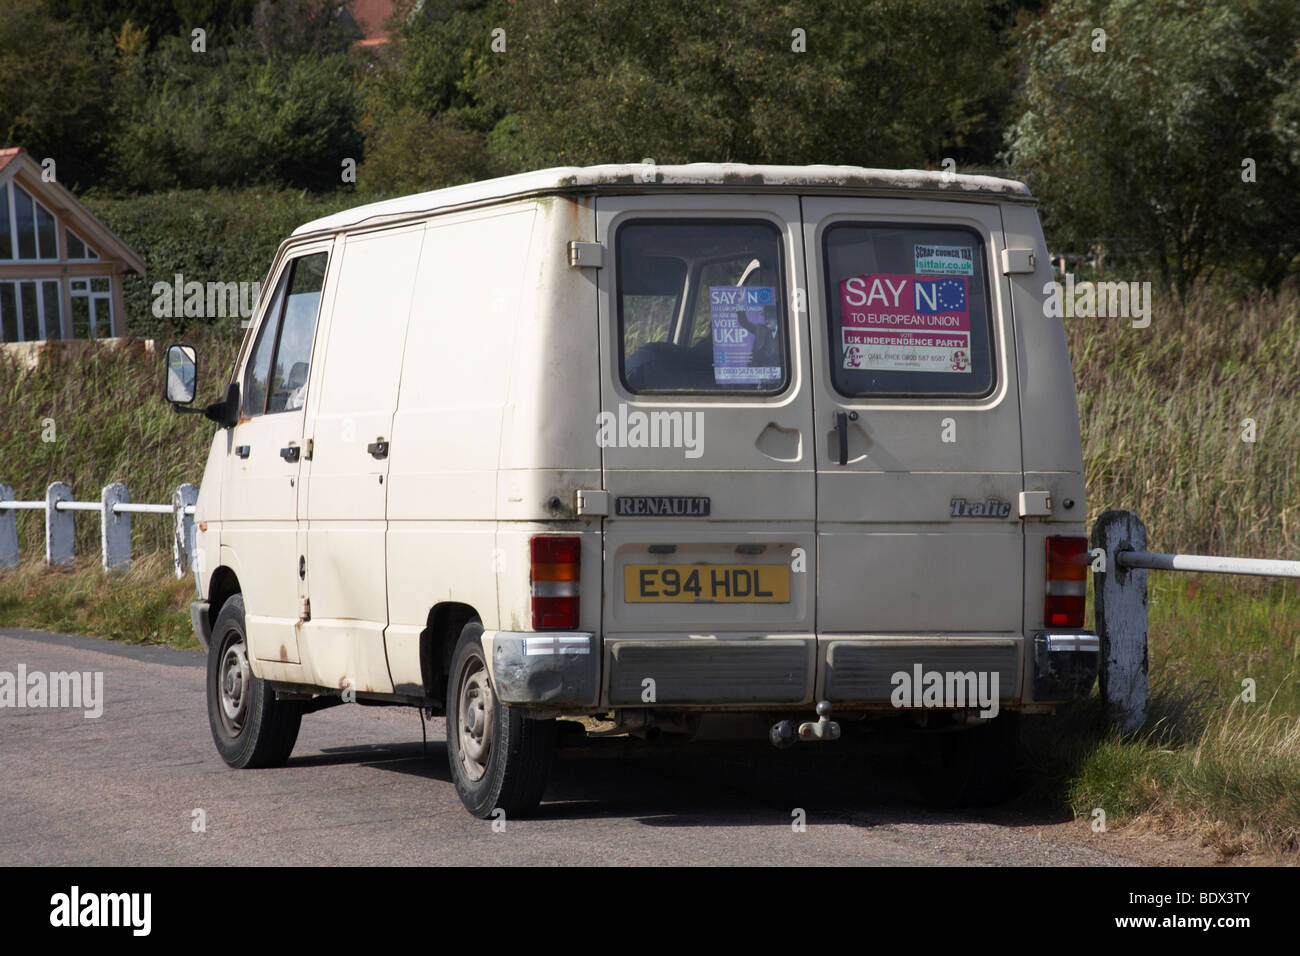 UKIP supporter's van - say no to European Union Stock Photo